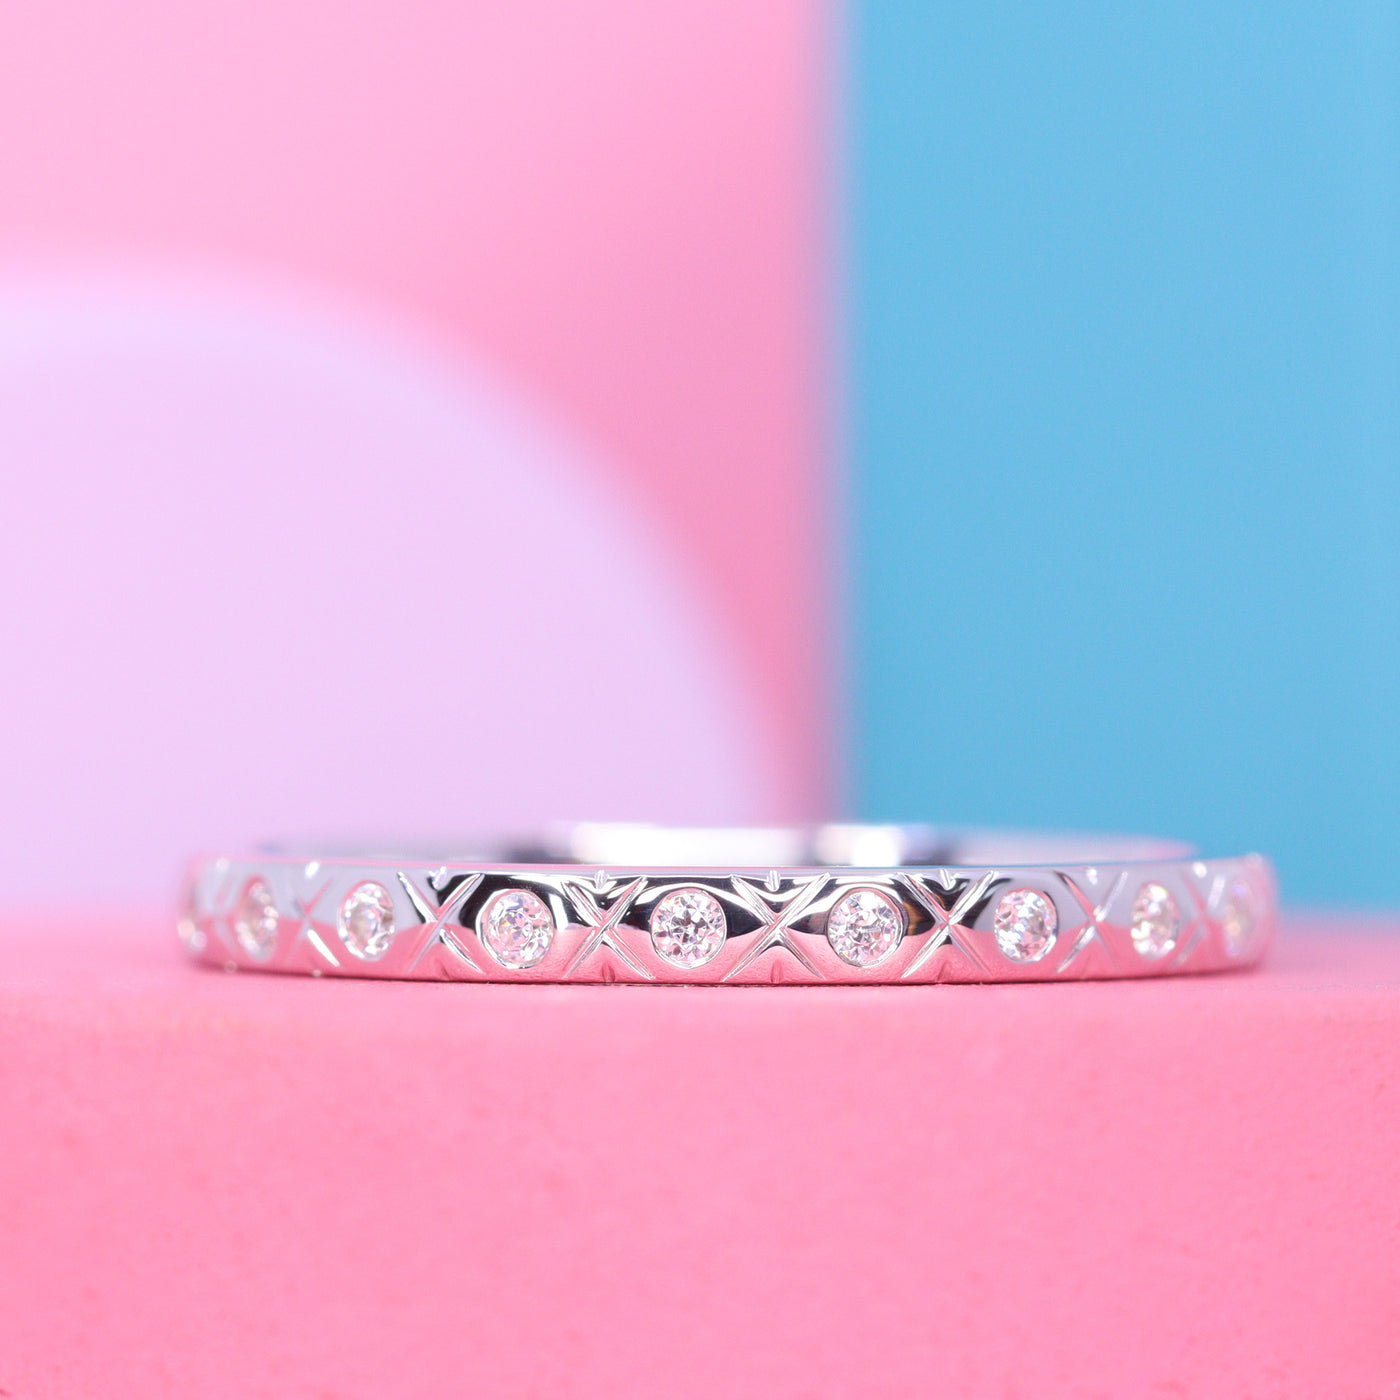 Penelope - Vintage Inspired Diamond Set Full Eternity Ring - Made-to-Order